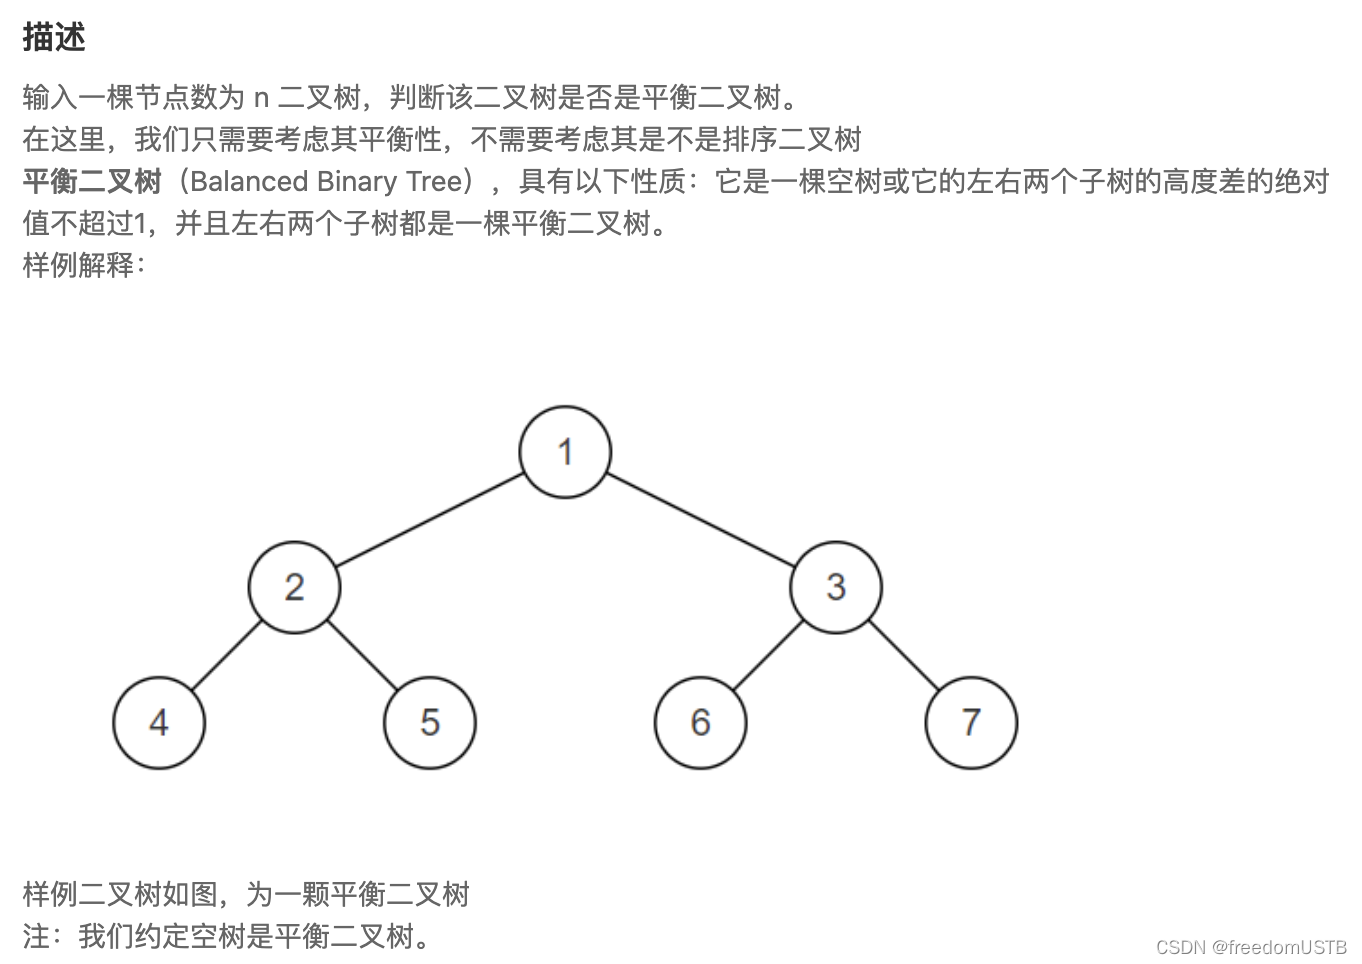 题目描述输入一棵二叉树，判断该二叉树是否是平衡二叉树。